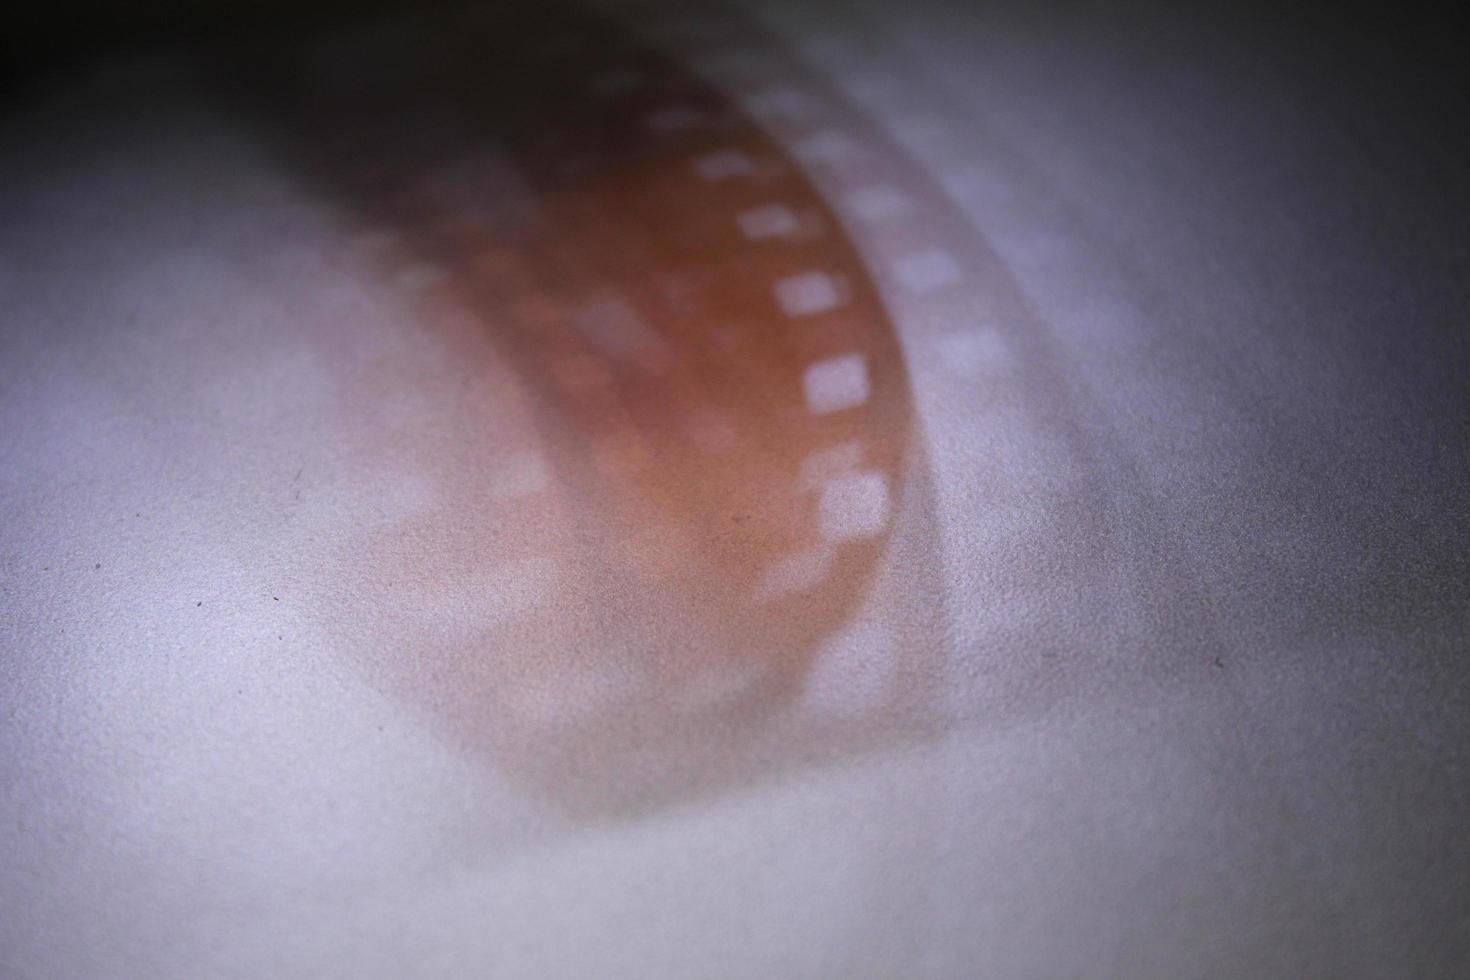 luz de sombreado de la intensidad de la película fotográfica sobre un fondo plateado foto